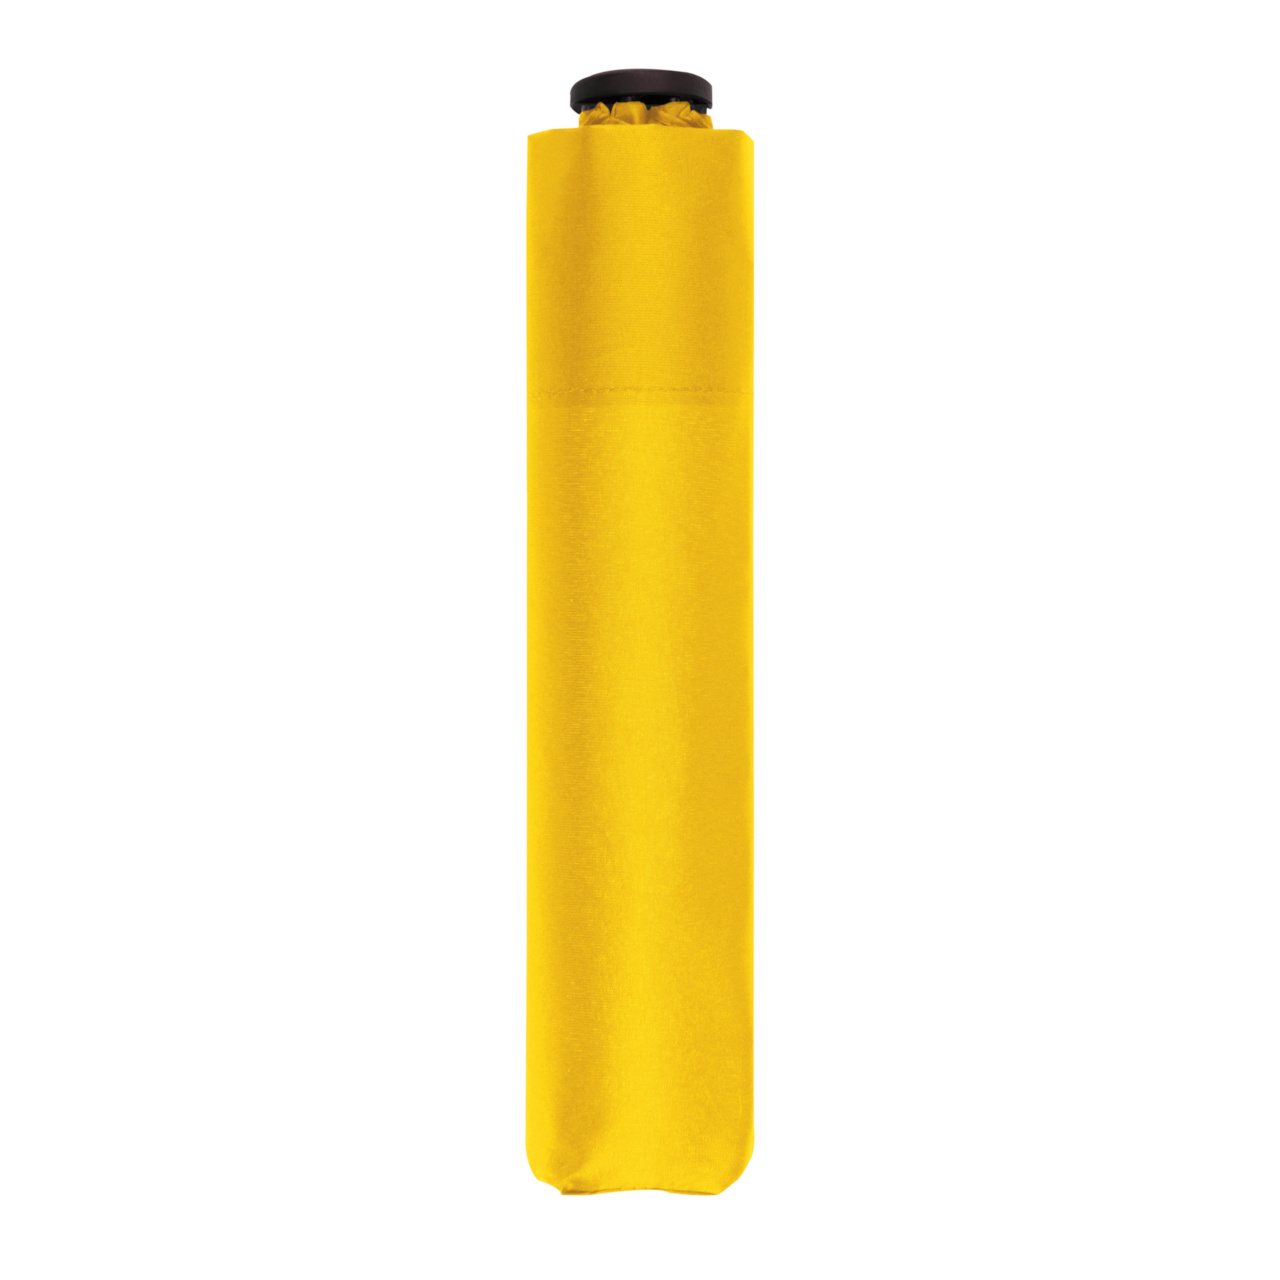 Doppler ZERO 99 Gramm Taschenschirm - shiny yellow